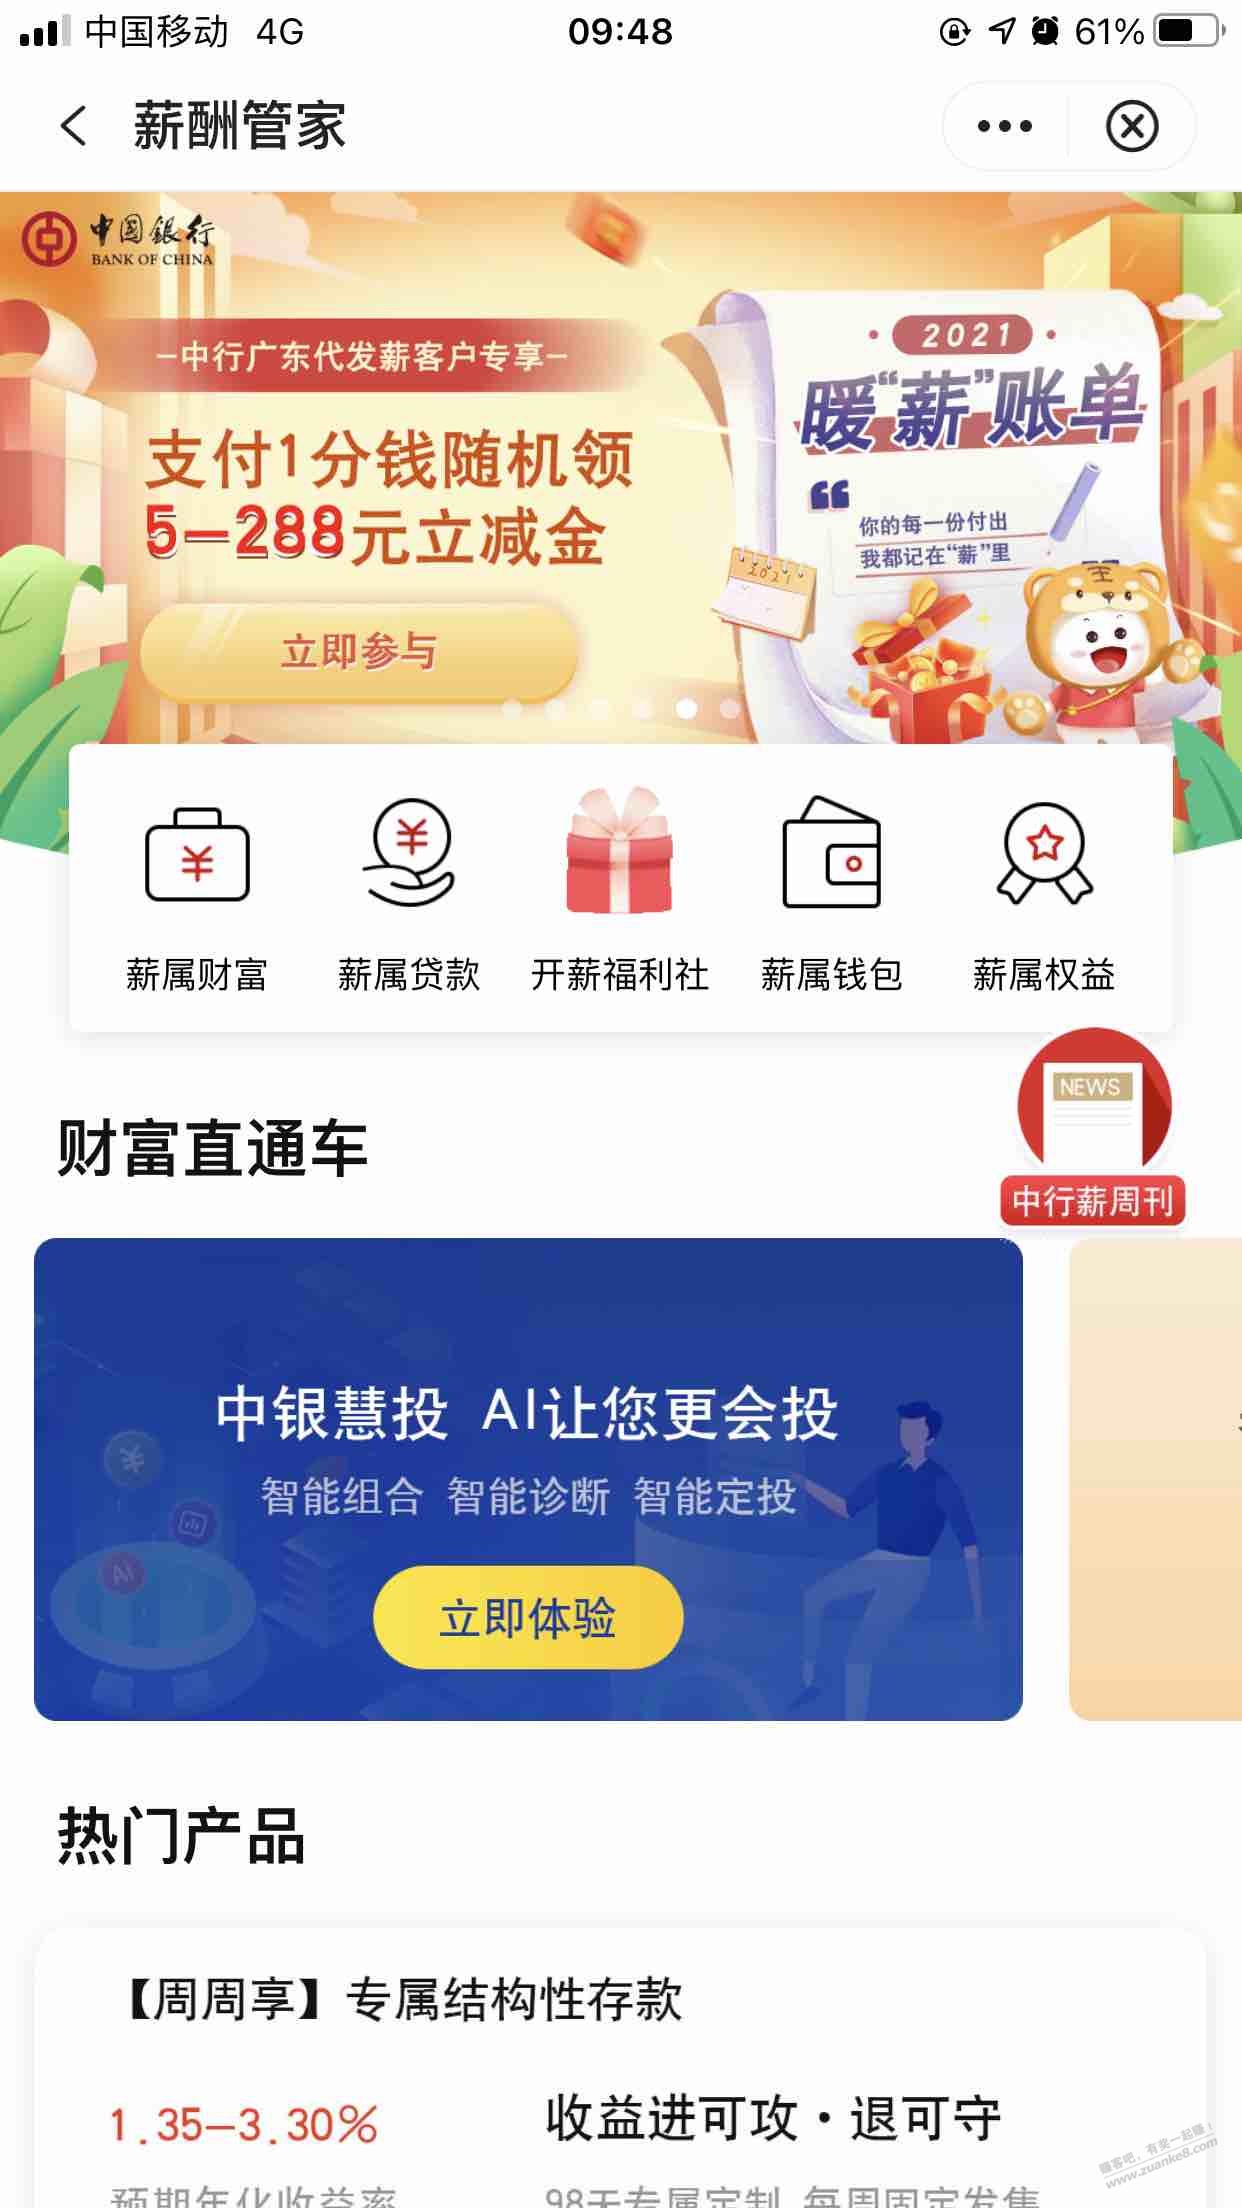 中行app-生活-薪酬管家-第四个广告-暖薪账单-惠小助(52huixz.com)